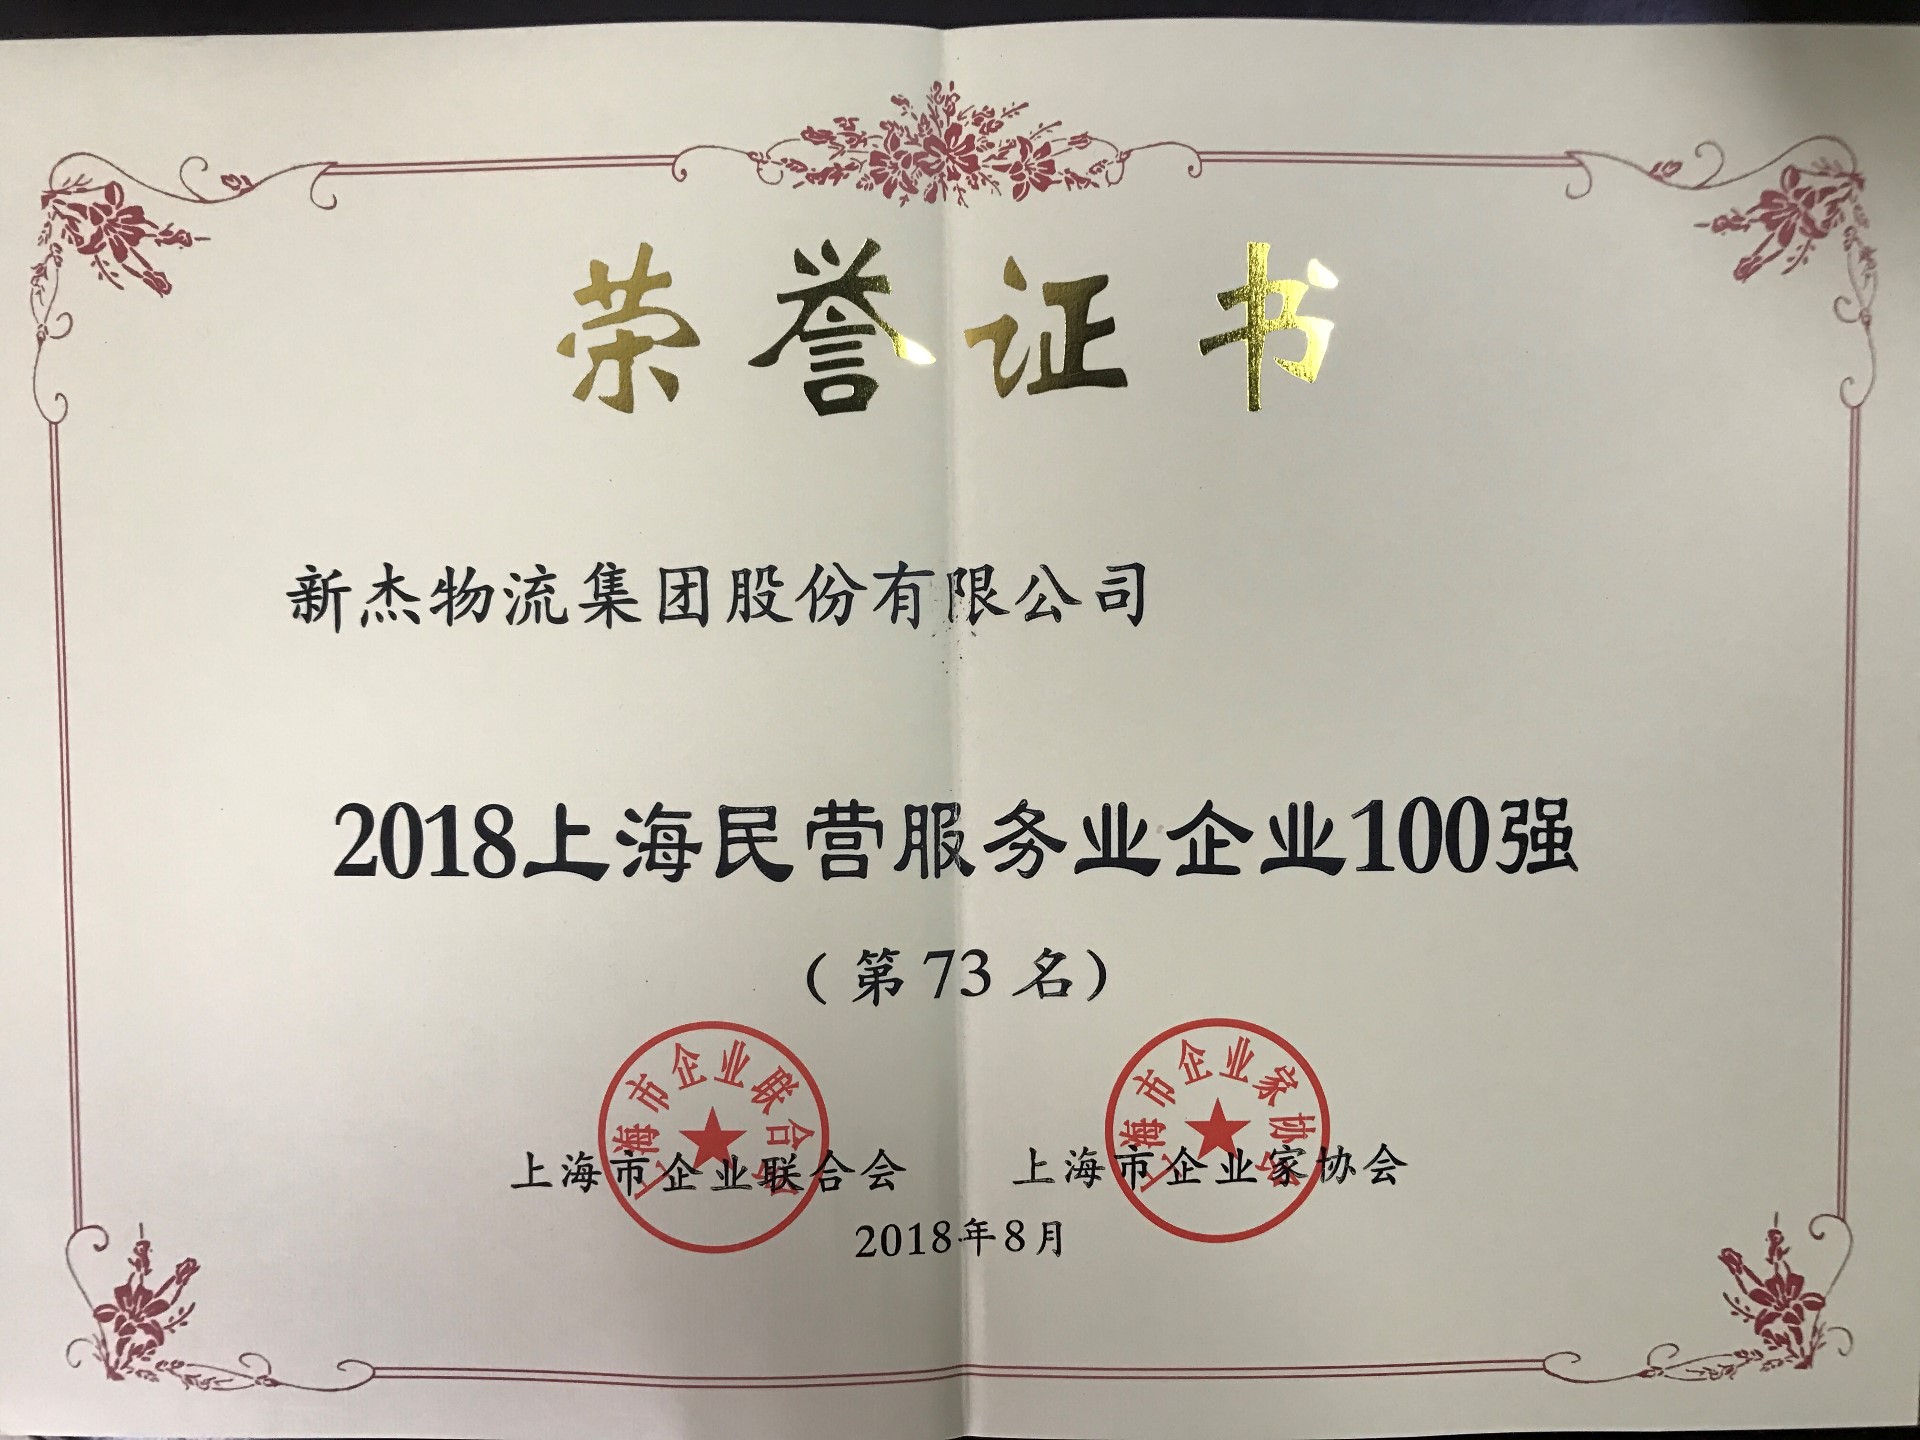 新杰物流榮獲2018上海民營服務業企業100強第73名